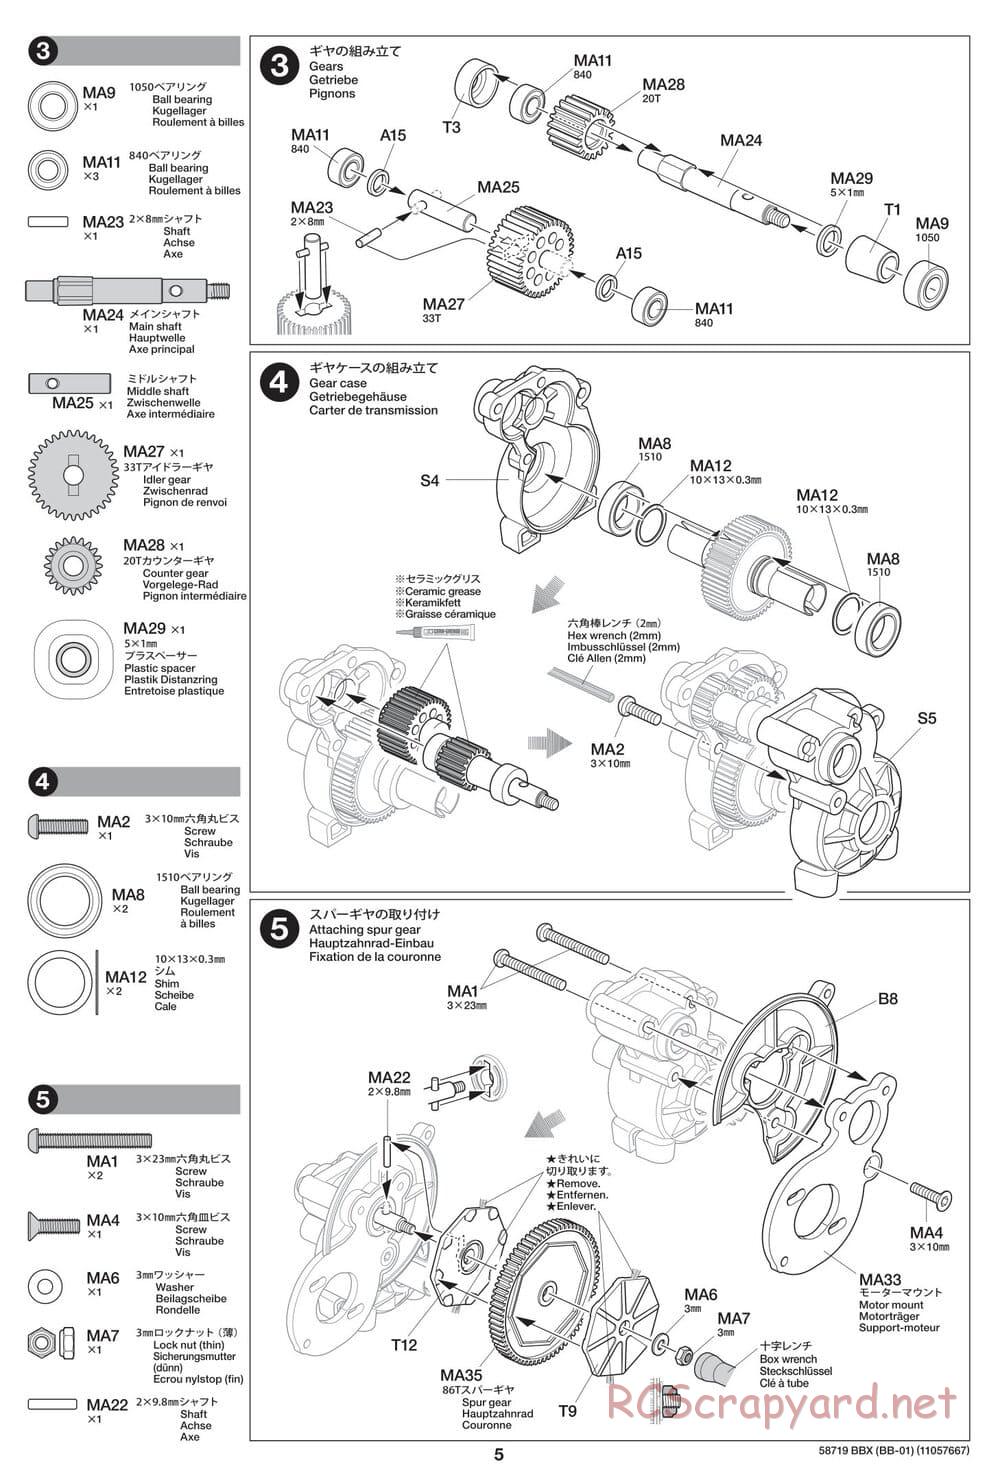 Tamiya - BBX - BB-01 Chassis - Manual - Page 5